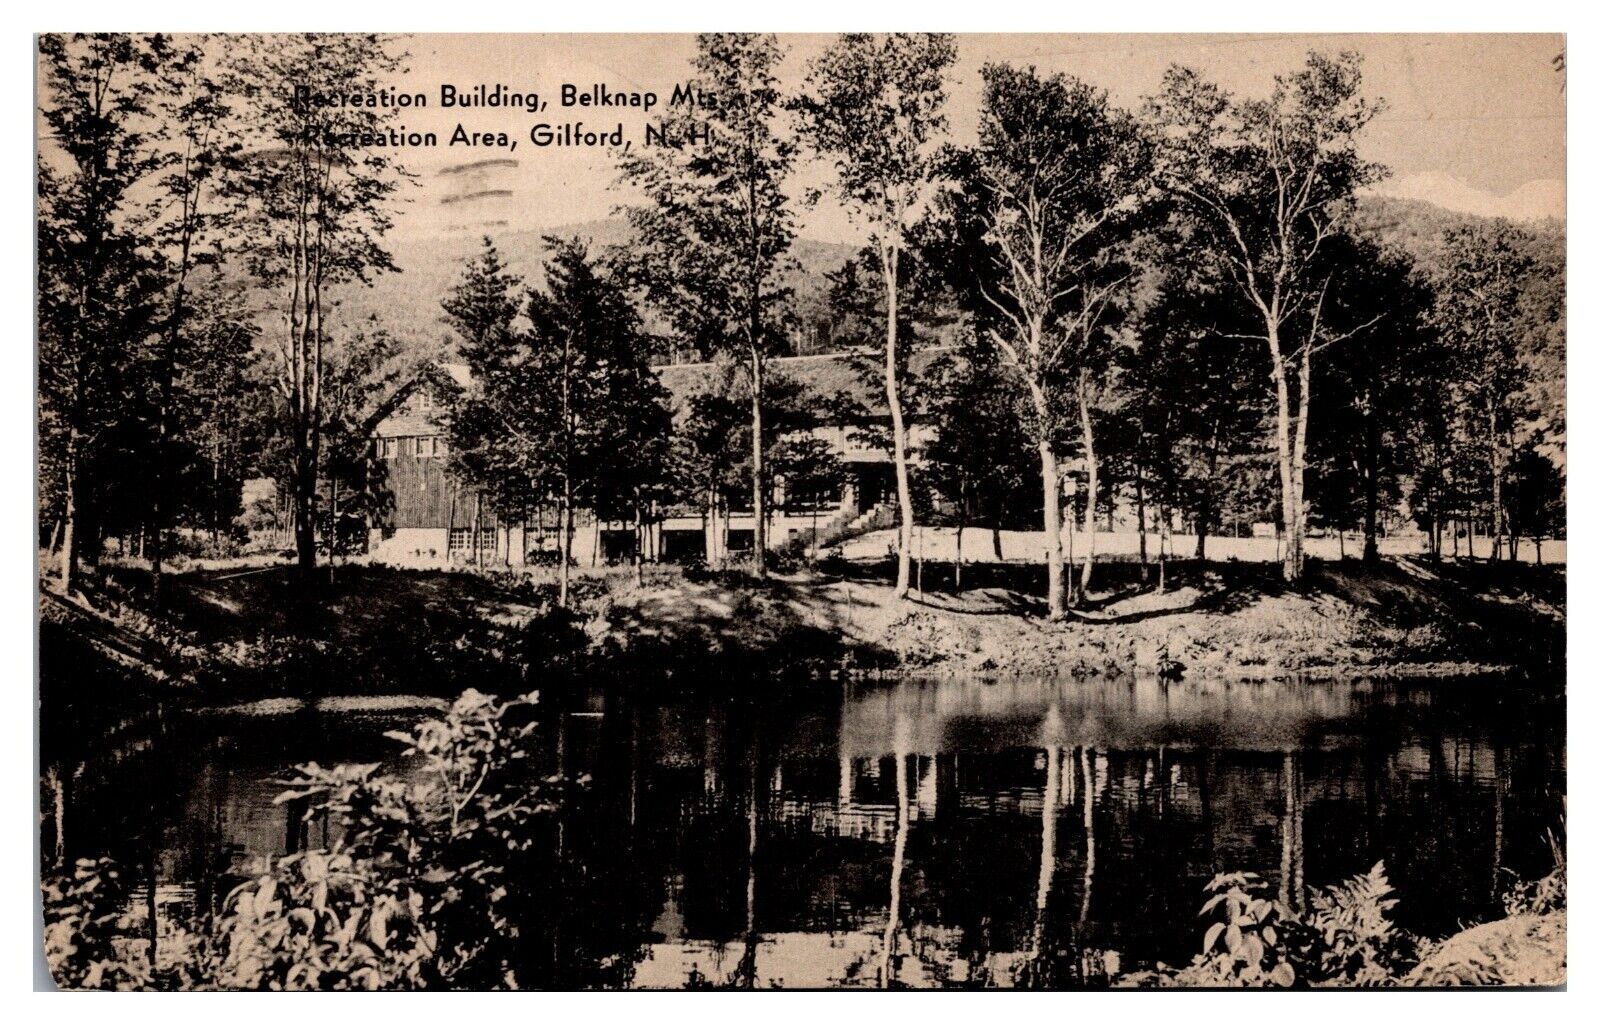 Vintage Recreation Building, Belknap Mtns Rec. Area, Gilford, NH Postcard